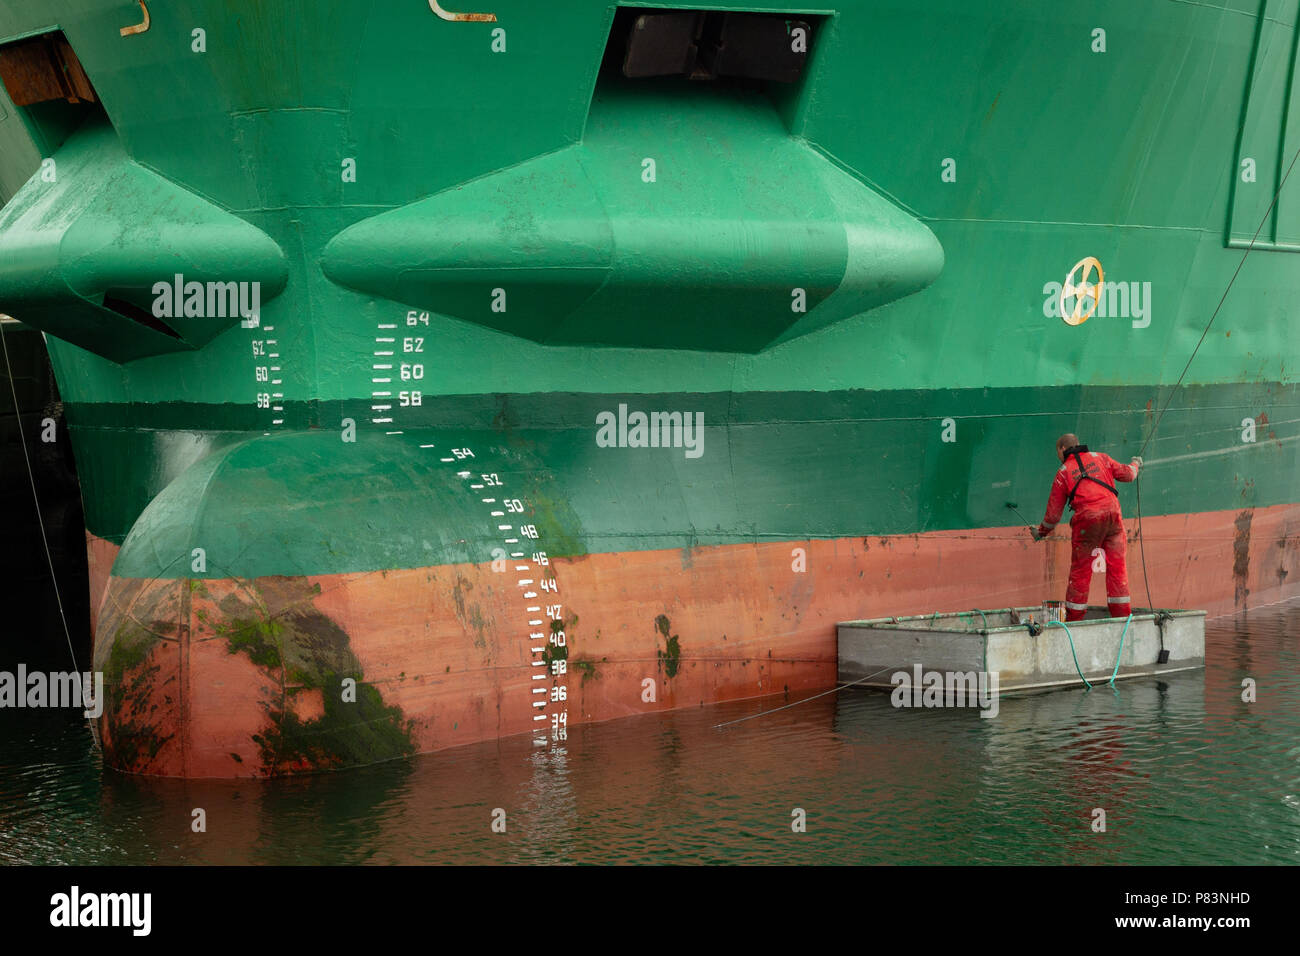 Kinsale, Comté, Cork, Irlande. Peinture rouge sur un grand navire de cargaison de couleur verte avec un petit rouleau de peinture. Banque D'Images